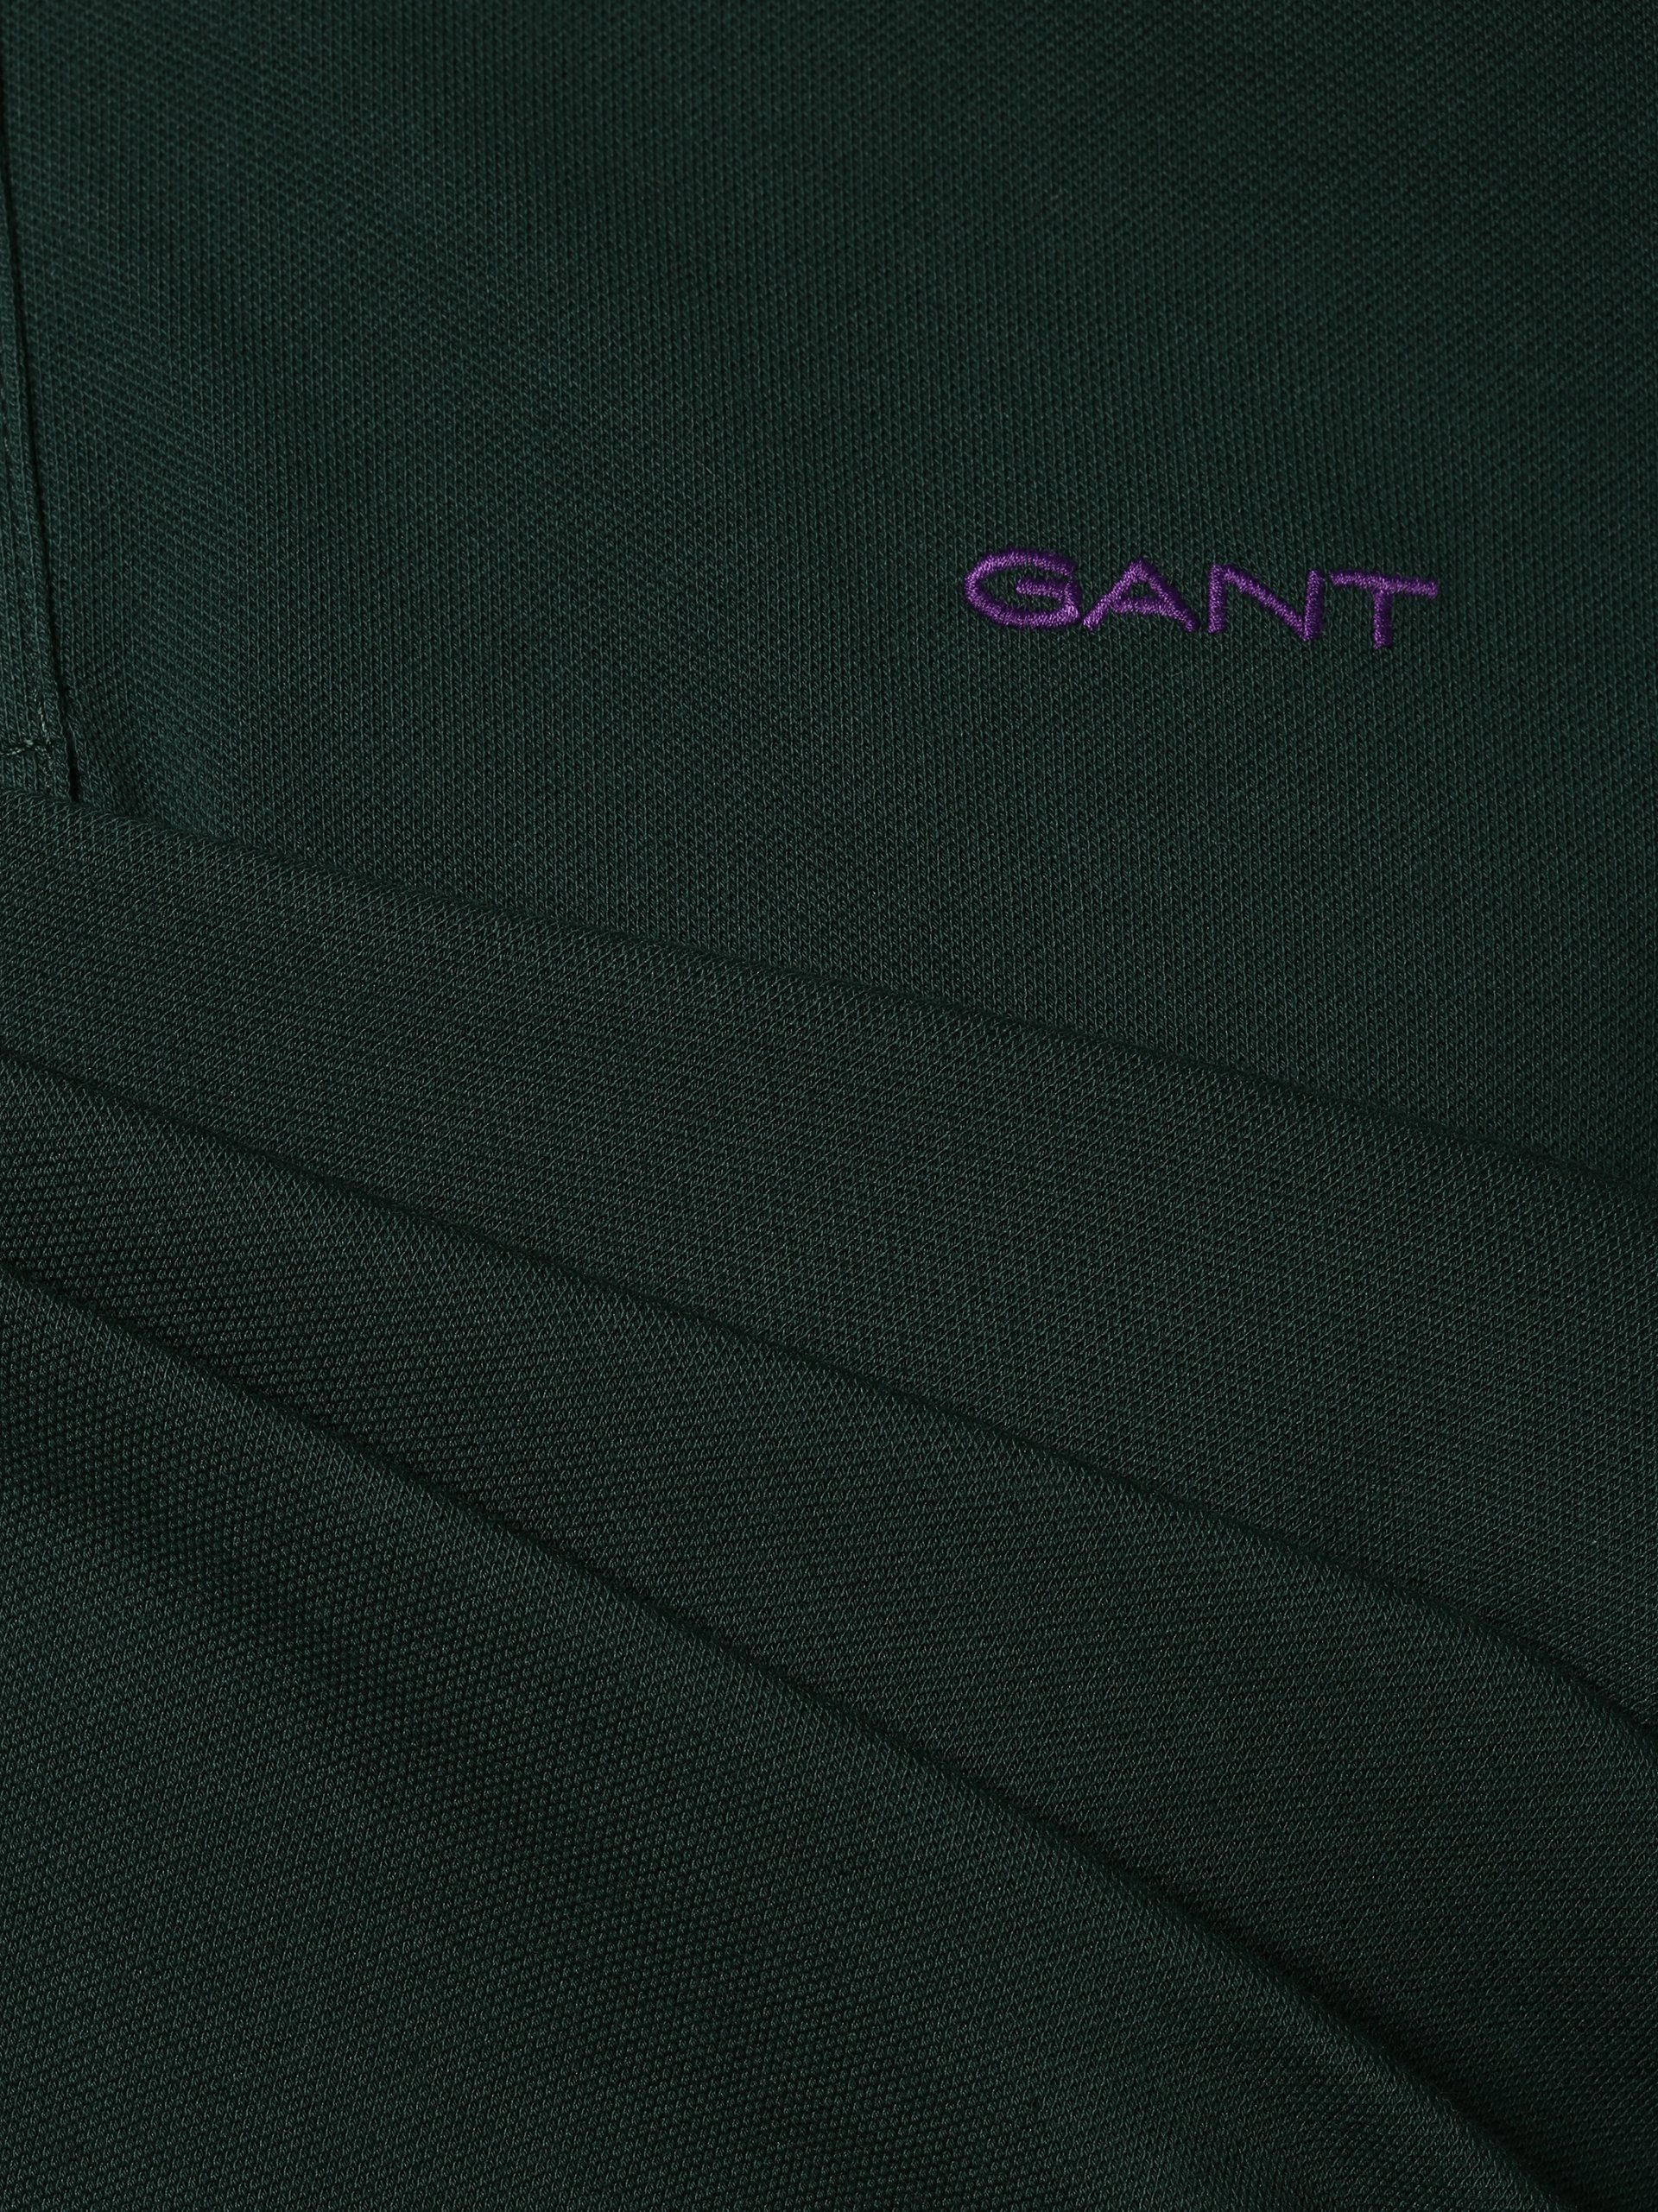 Gant grün Poloshirt